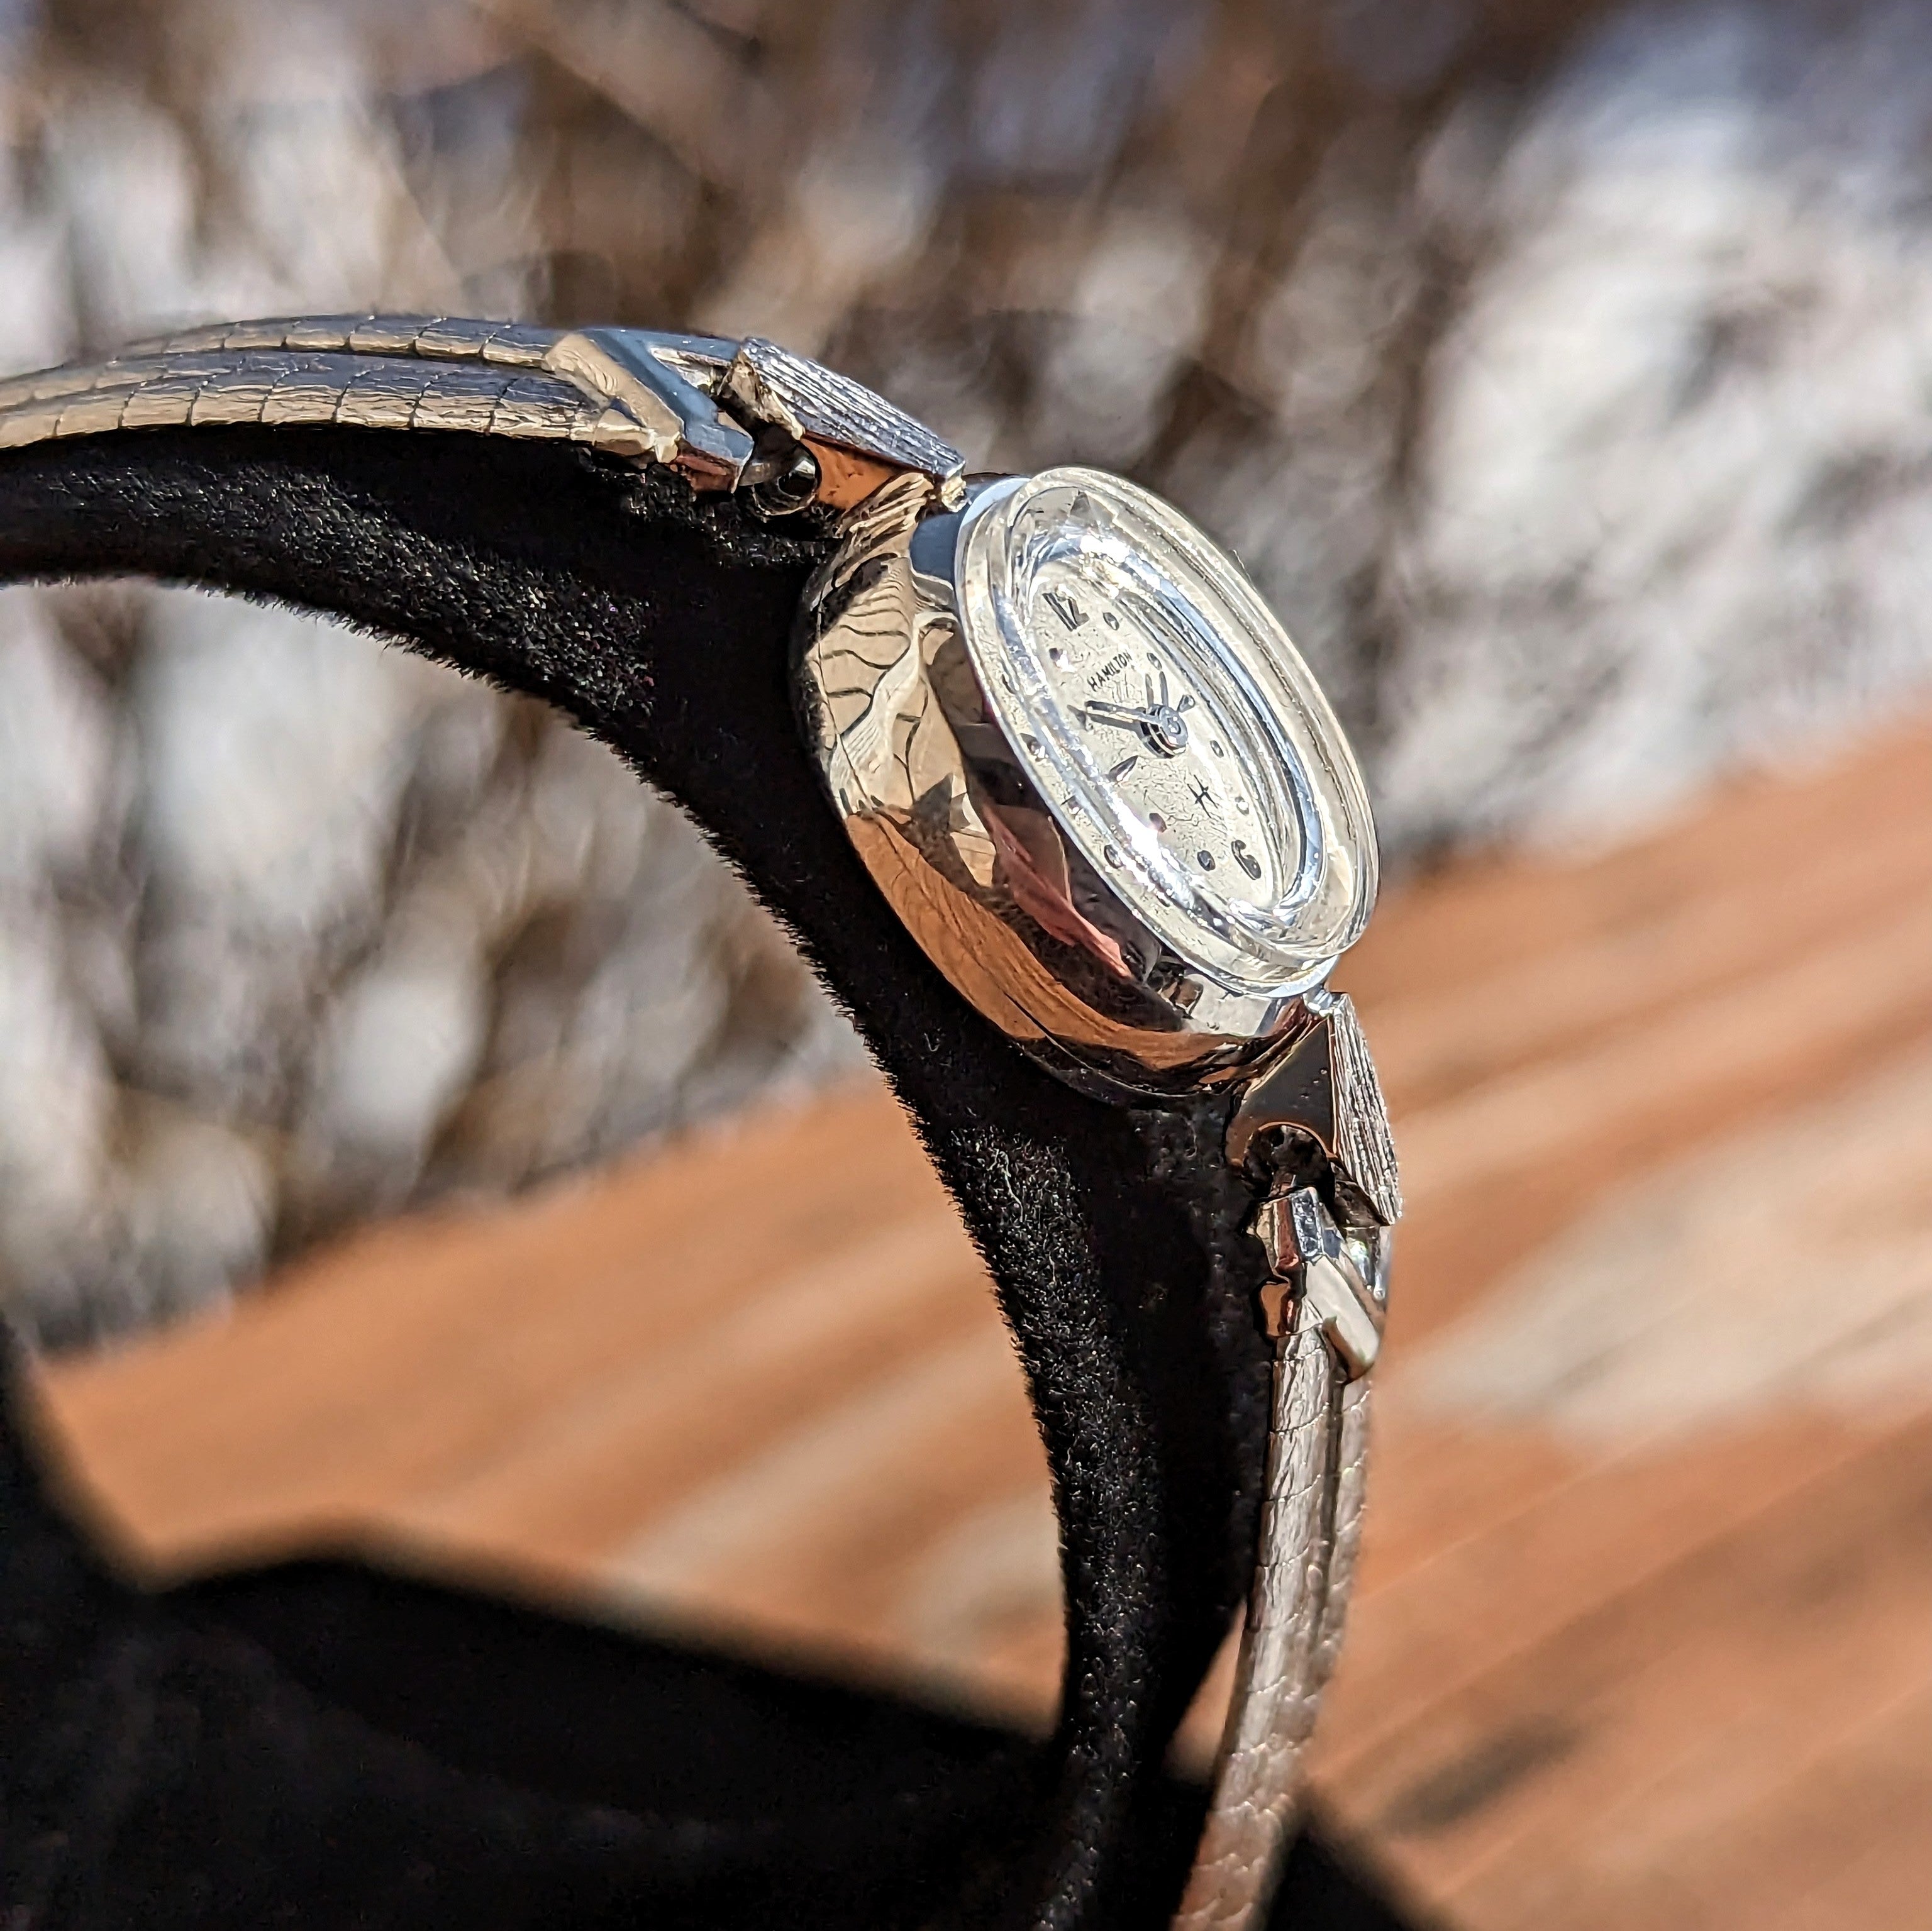 1940 Ladies' HAMILTON Wristwatch USA Caliber 780 17 Jewels 10K GF Watch